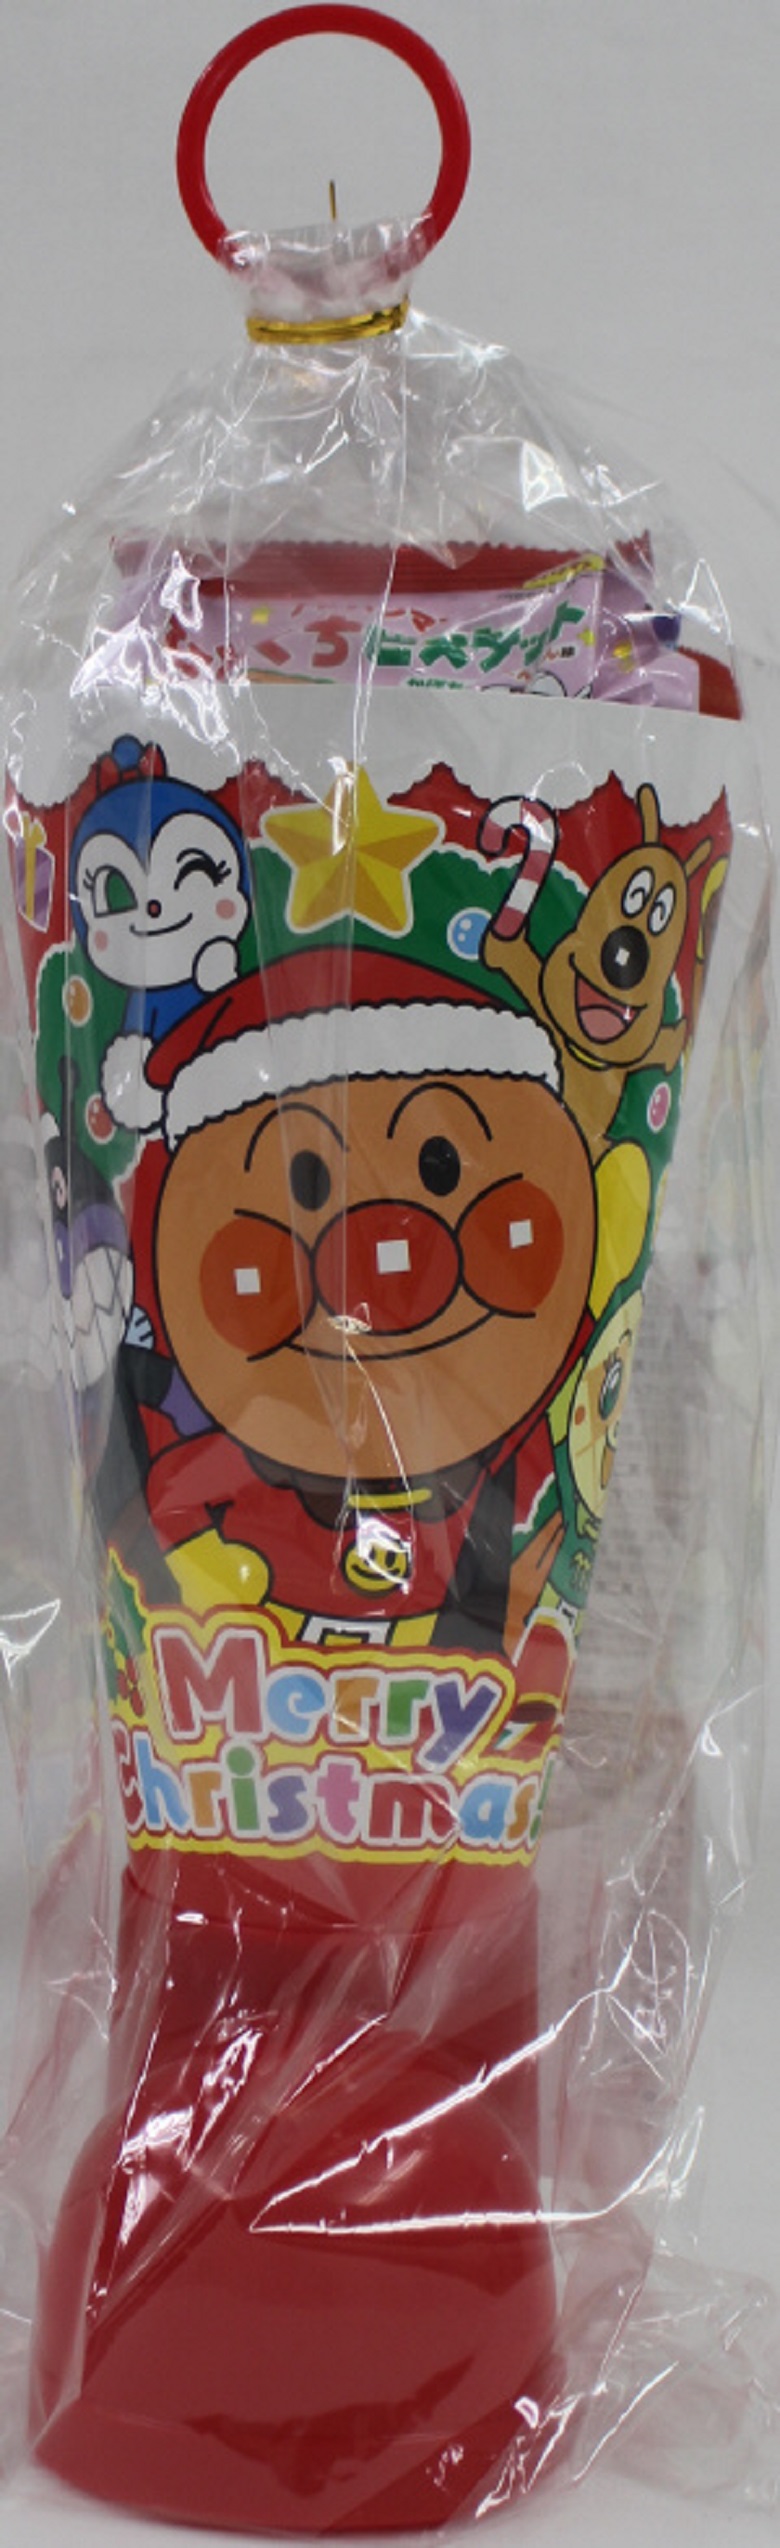 1 10位 年クリスマス スーパー コンビニの市販のお菓子の売れ筋ランキングを発表 お菓子と わたし お菓子好きのための情報サイト